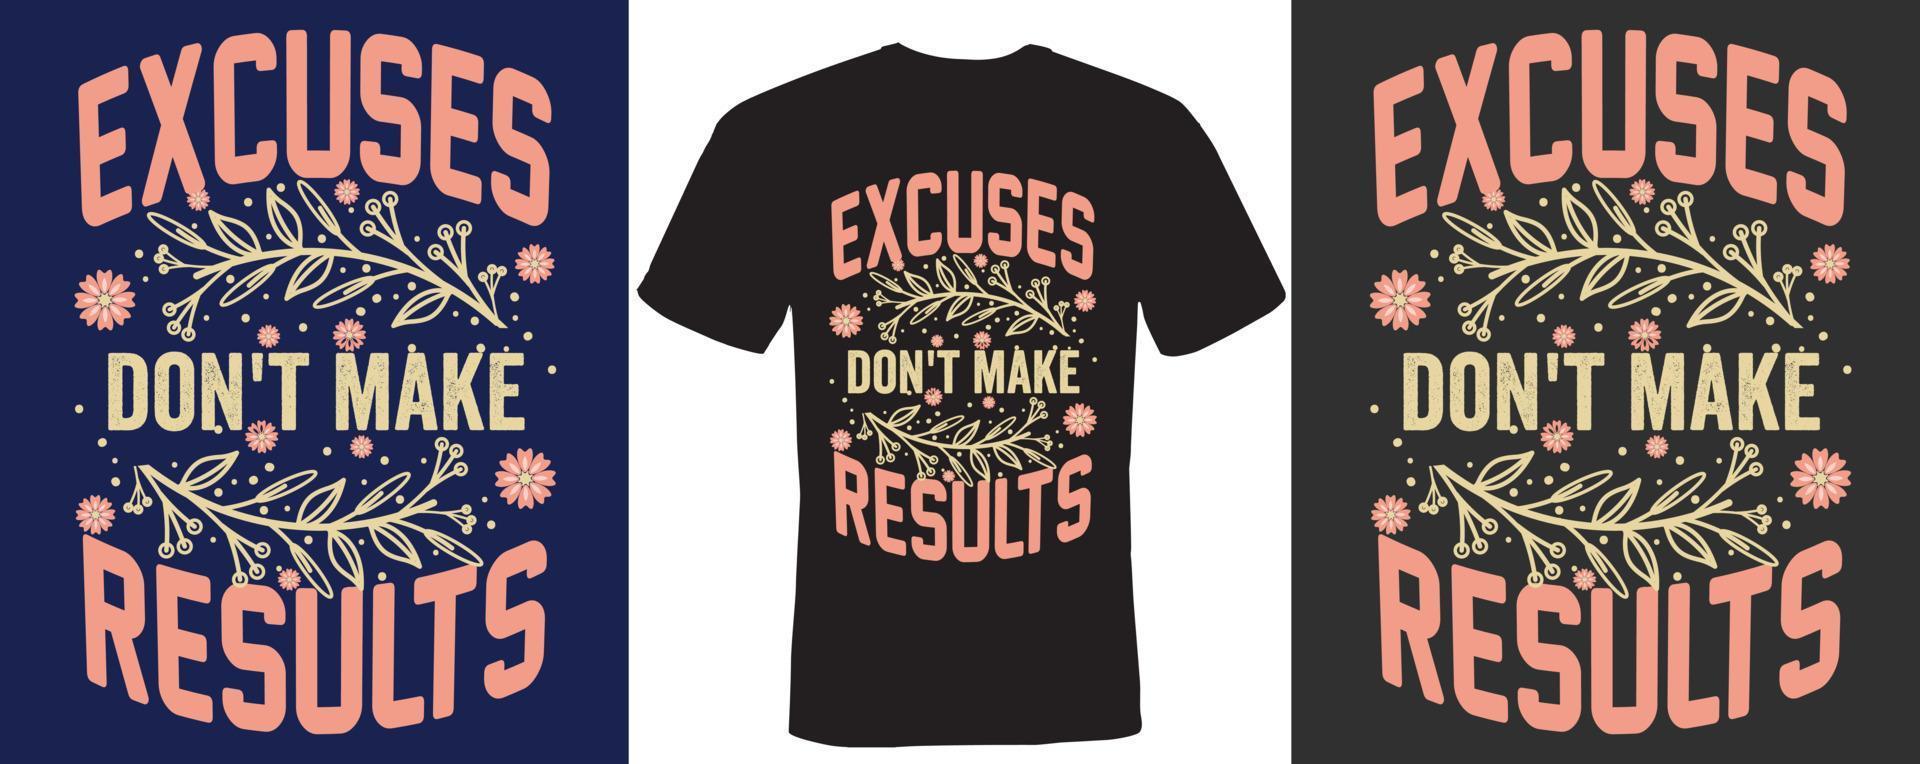 excuses niet doen maken resultaten t-shirt ontwerp vector